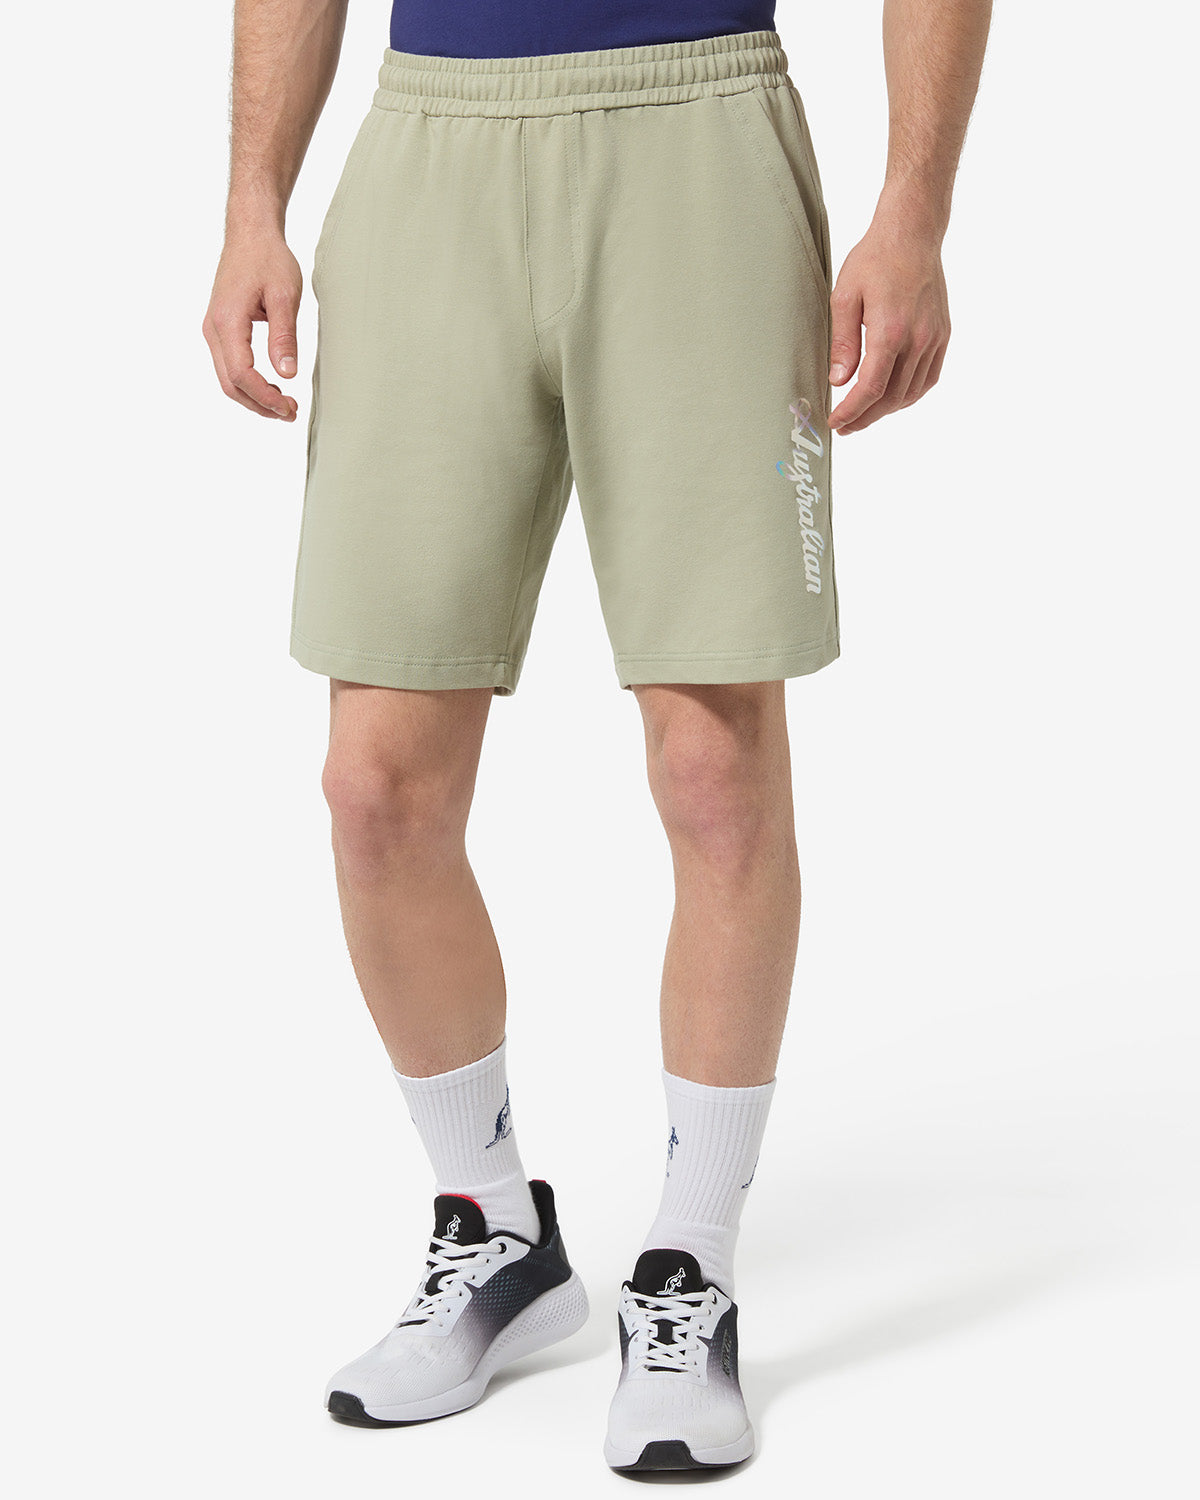 Urban Short: Australian Sportswear